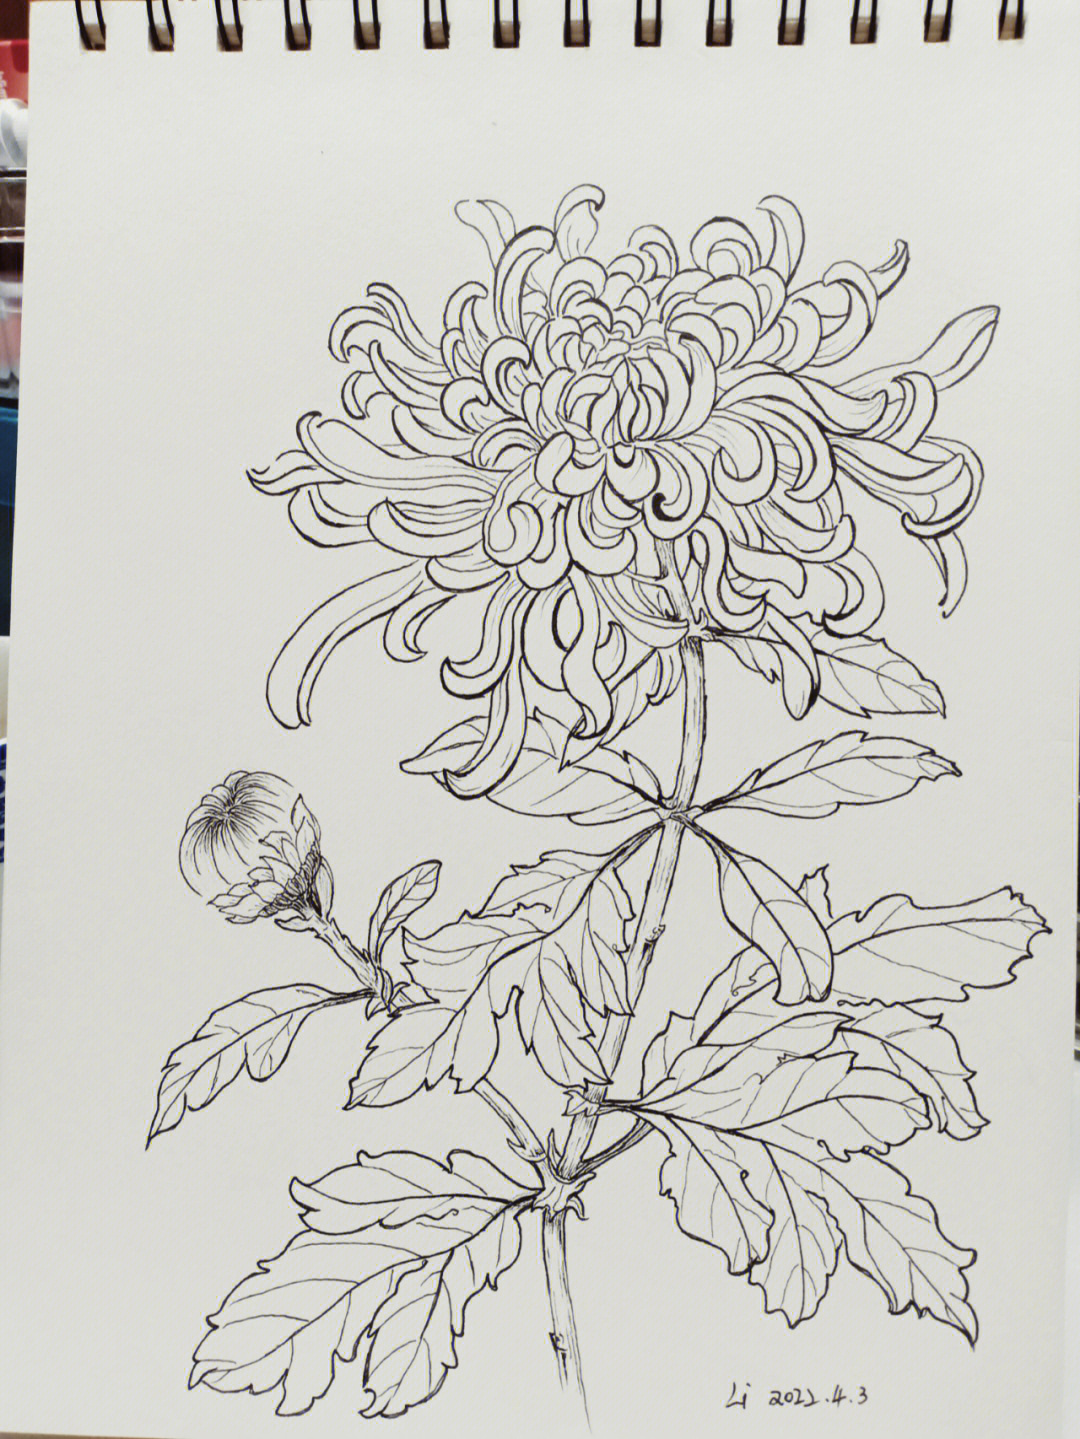 针管笔绘画菊